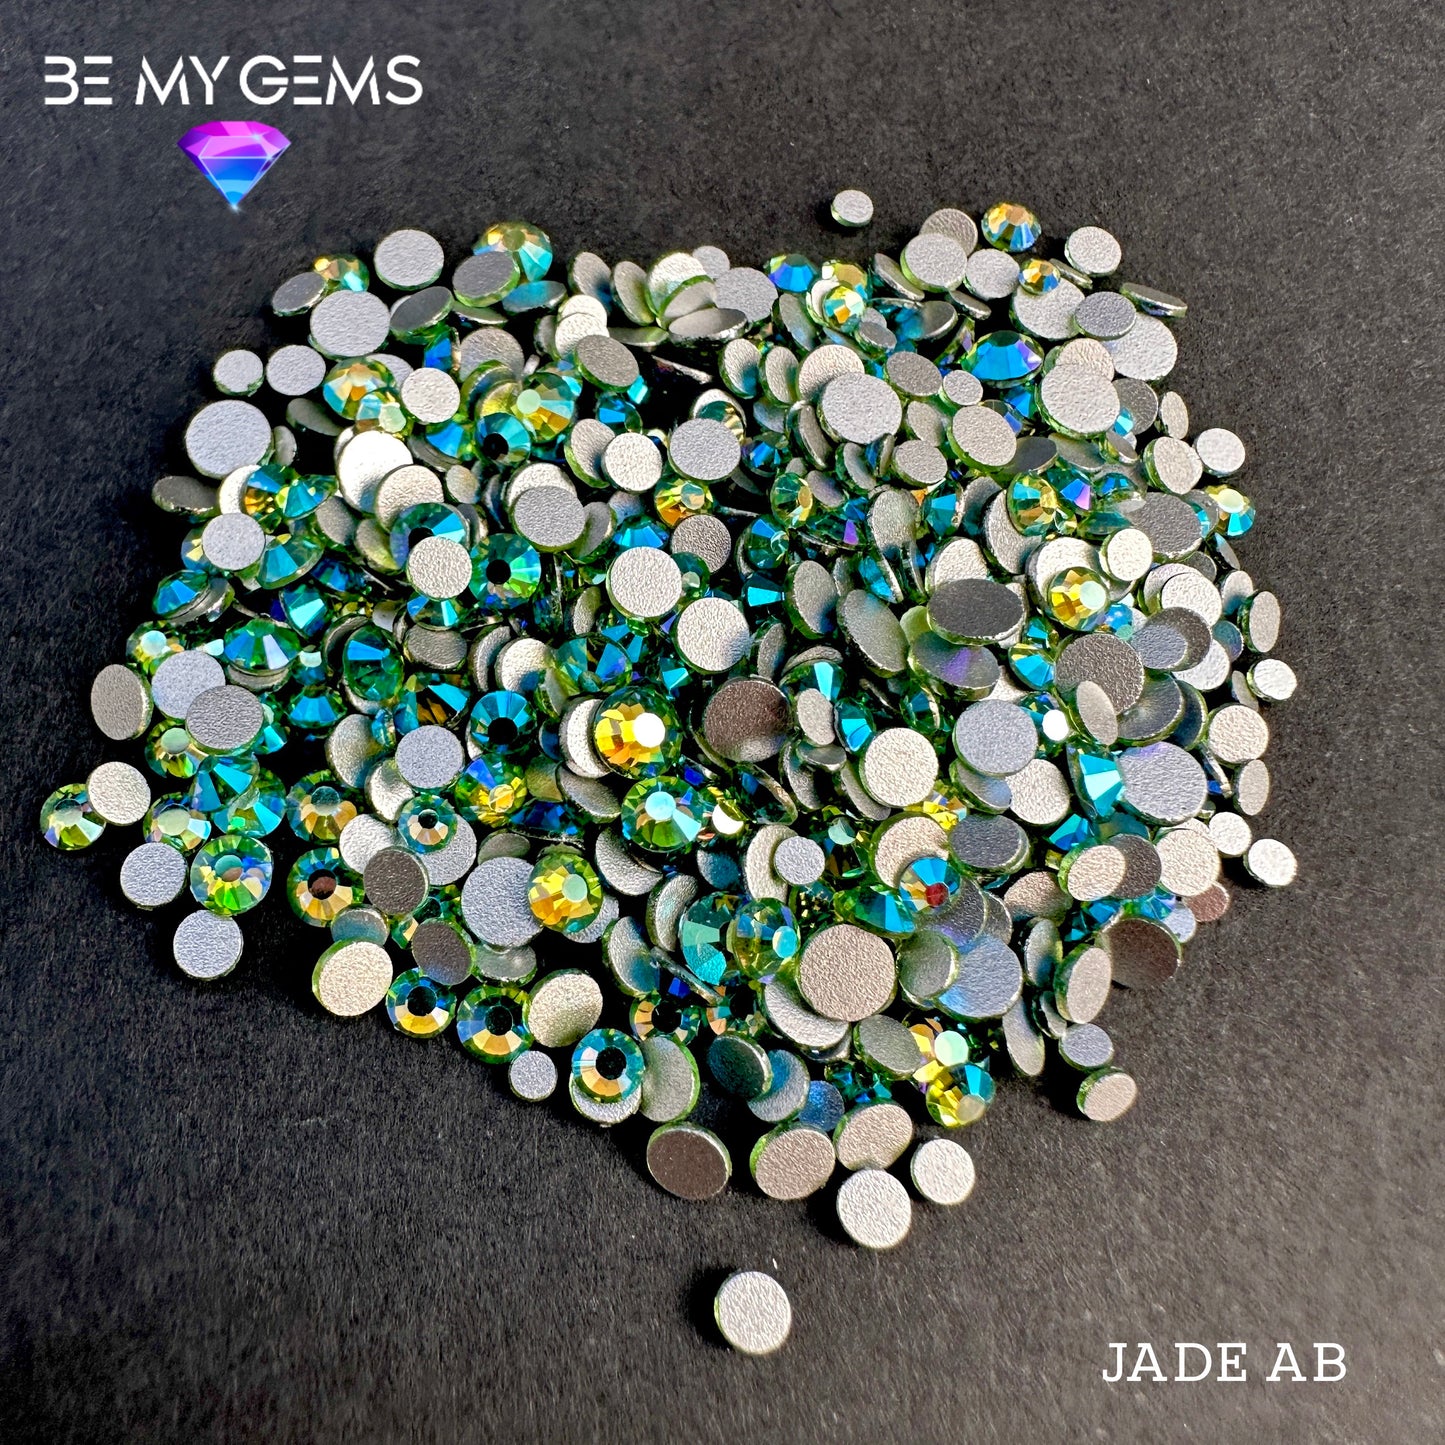 Jade AB